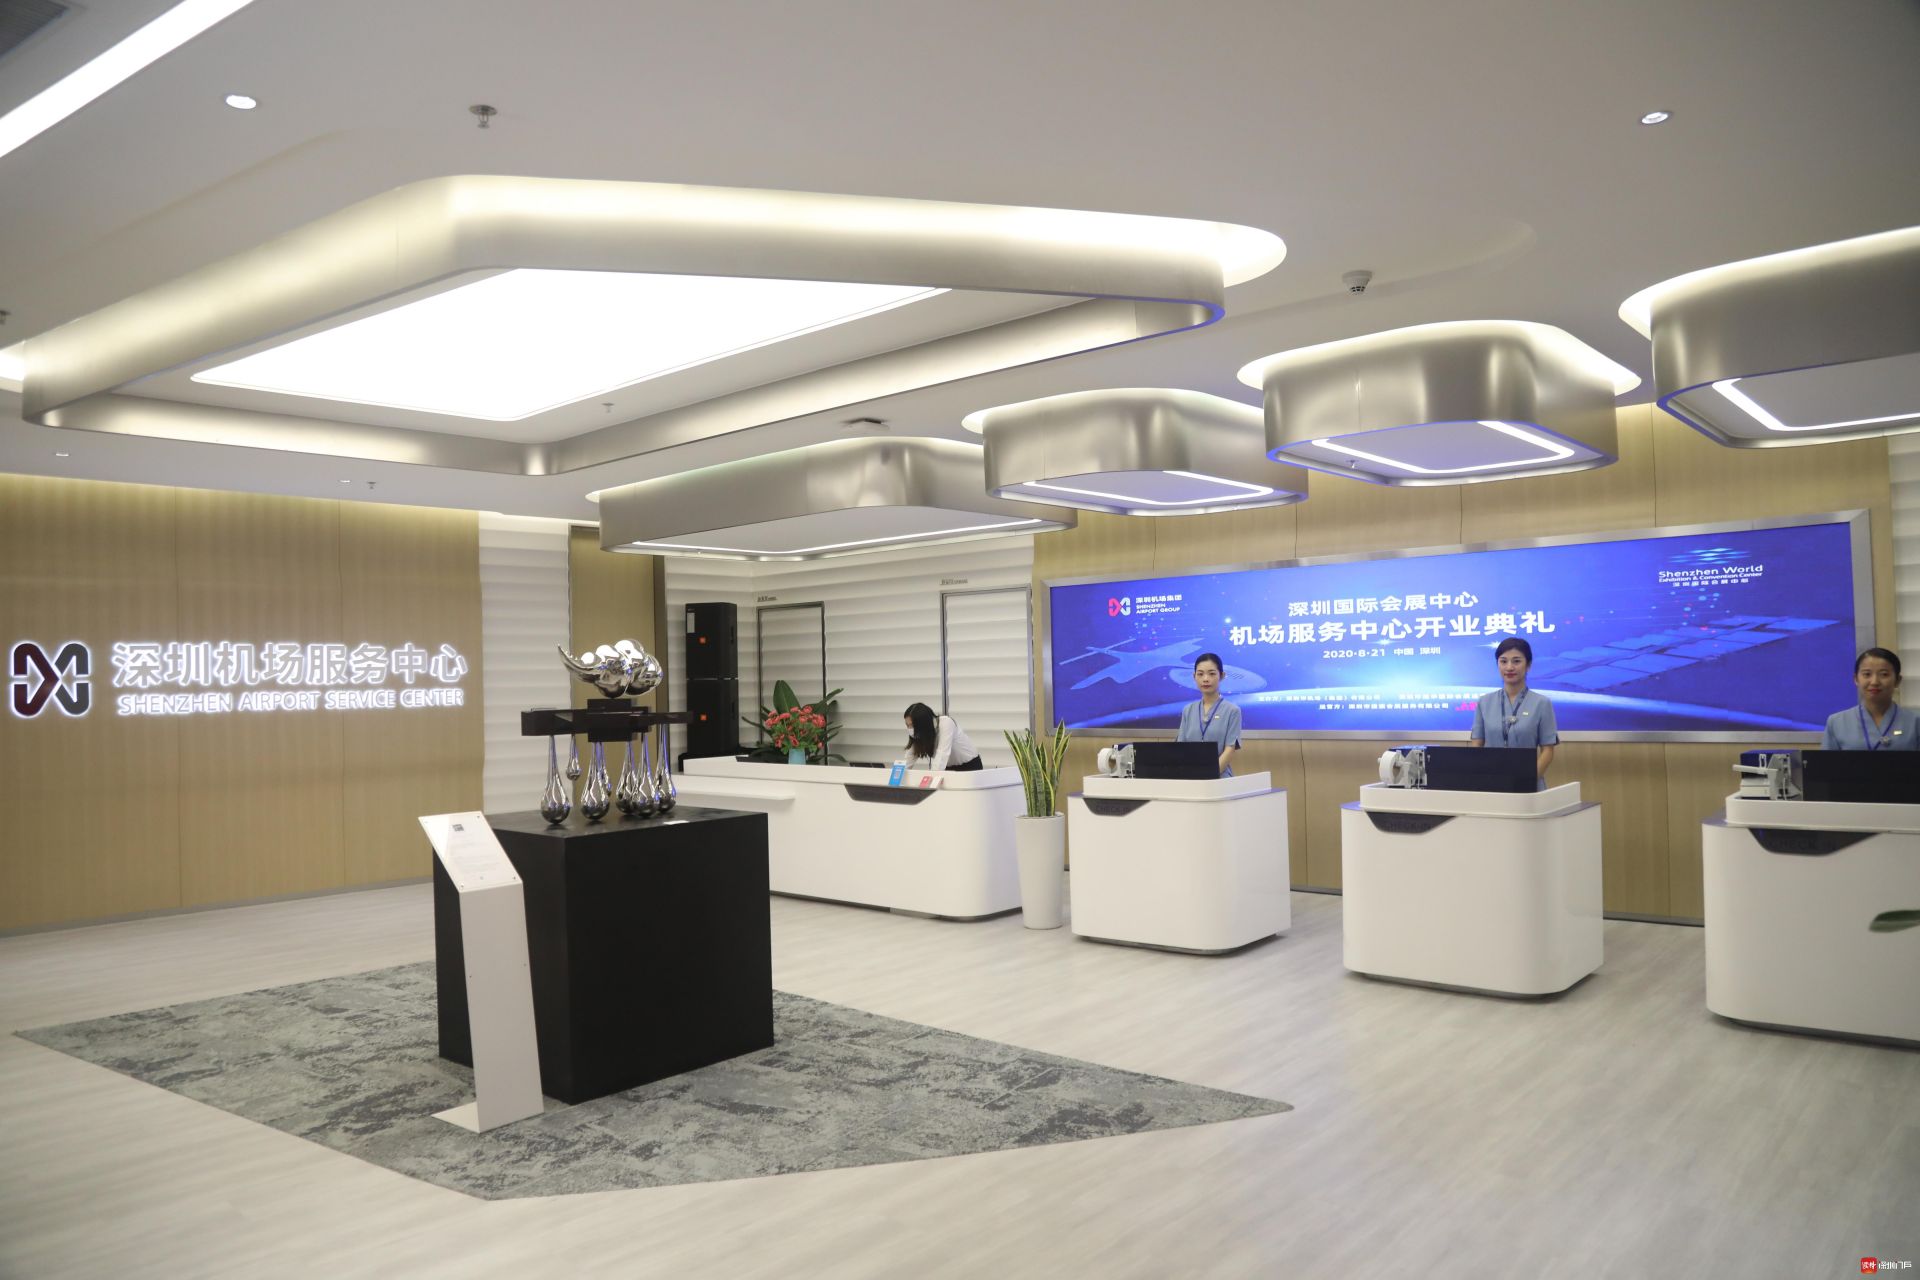 深圳国际会展中心机场服务中心启用  为参展商旅人士提供值机、行李托运、接机等“一站式”航空出行服务